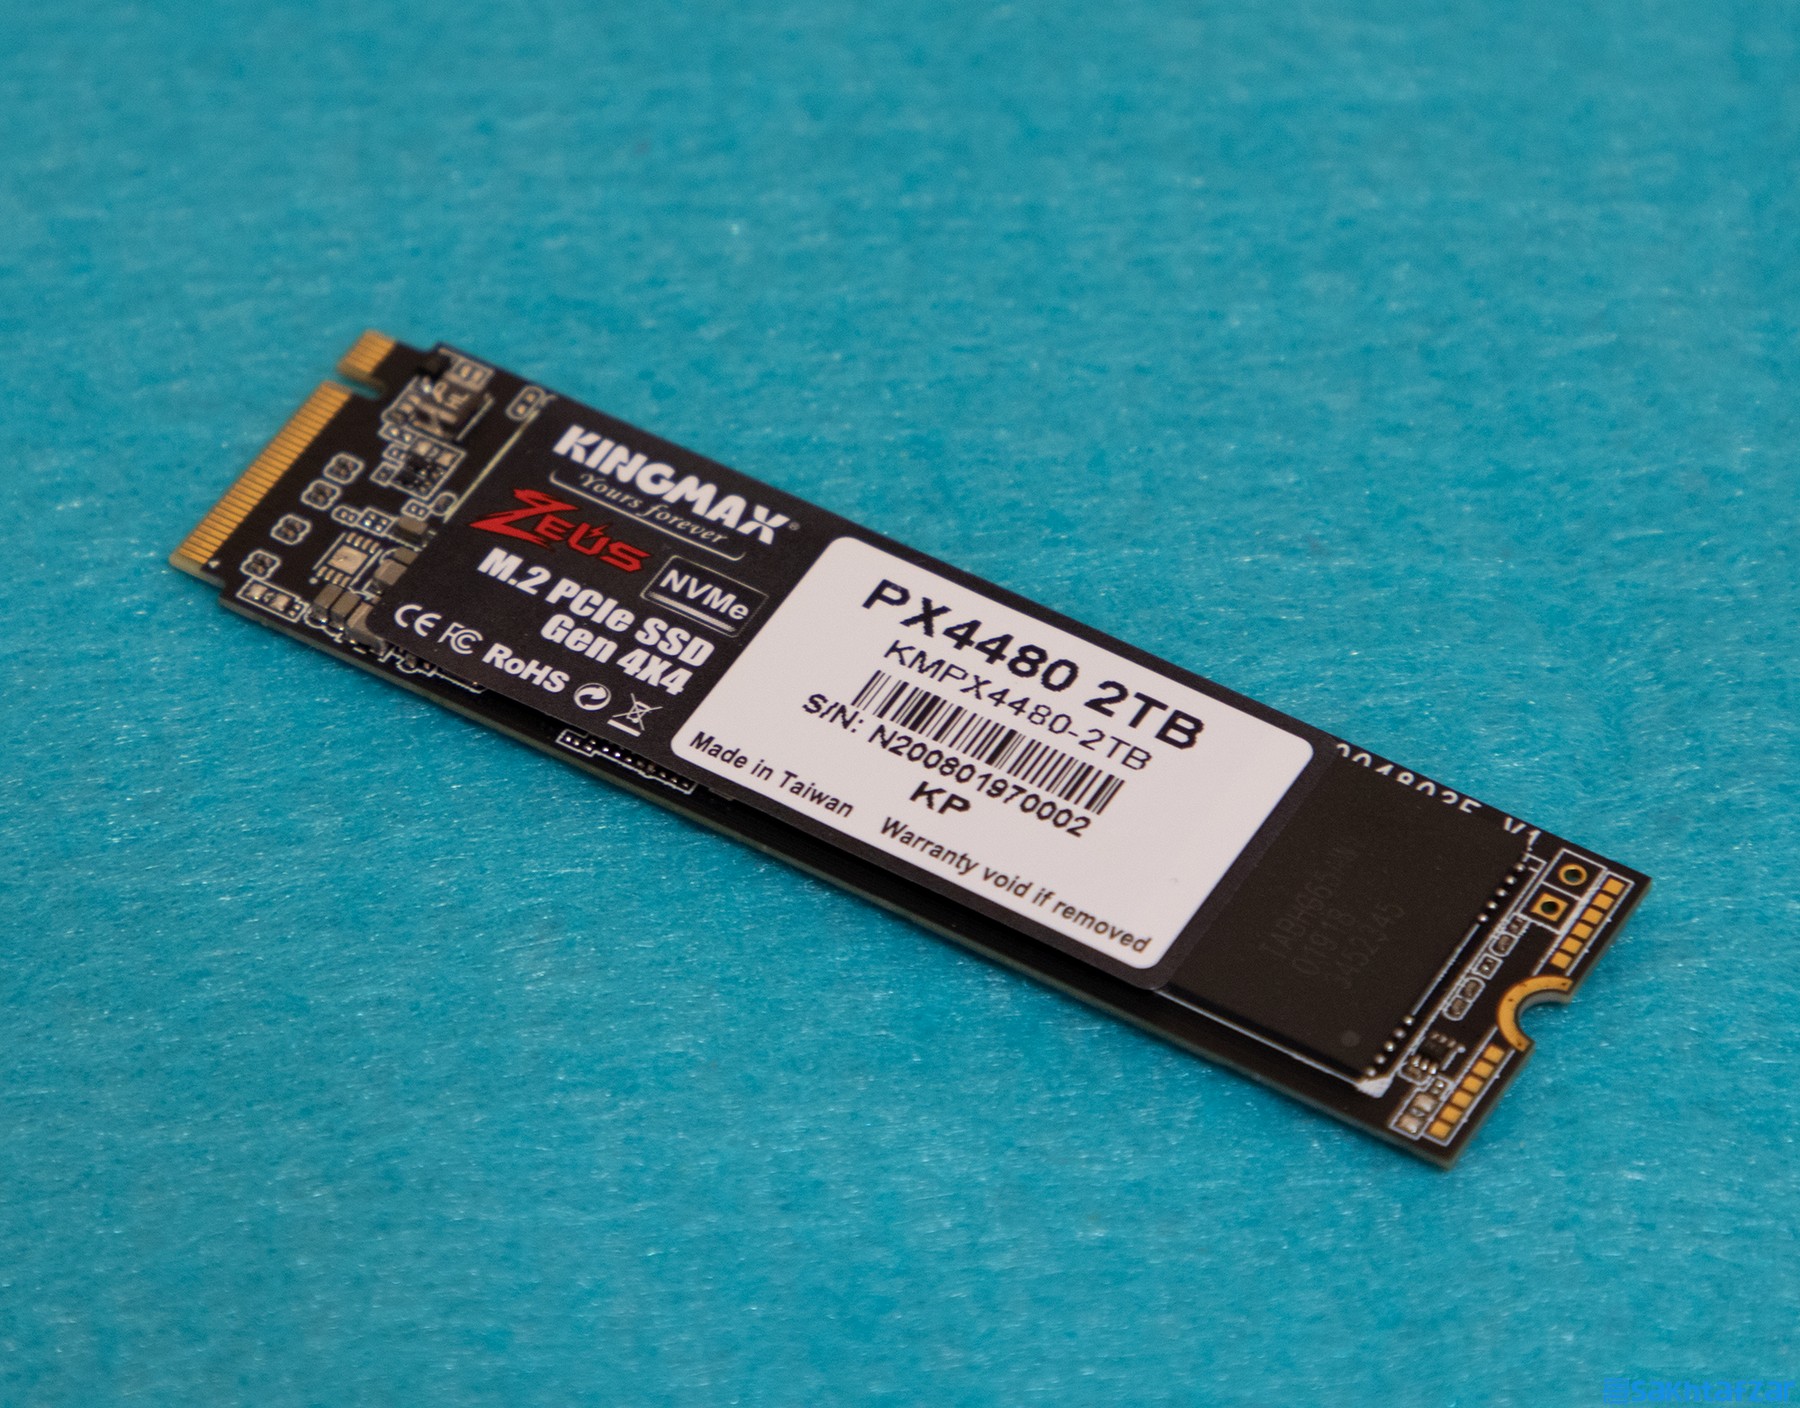 بررسی اس اس دی KINGMAX ZEUS PX4480 2TB PCIe Gen.4 x4